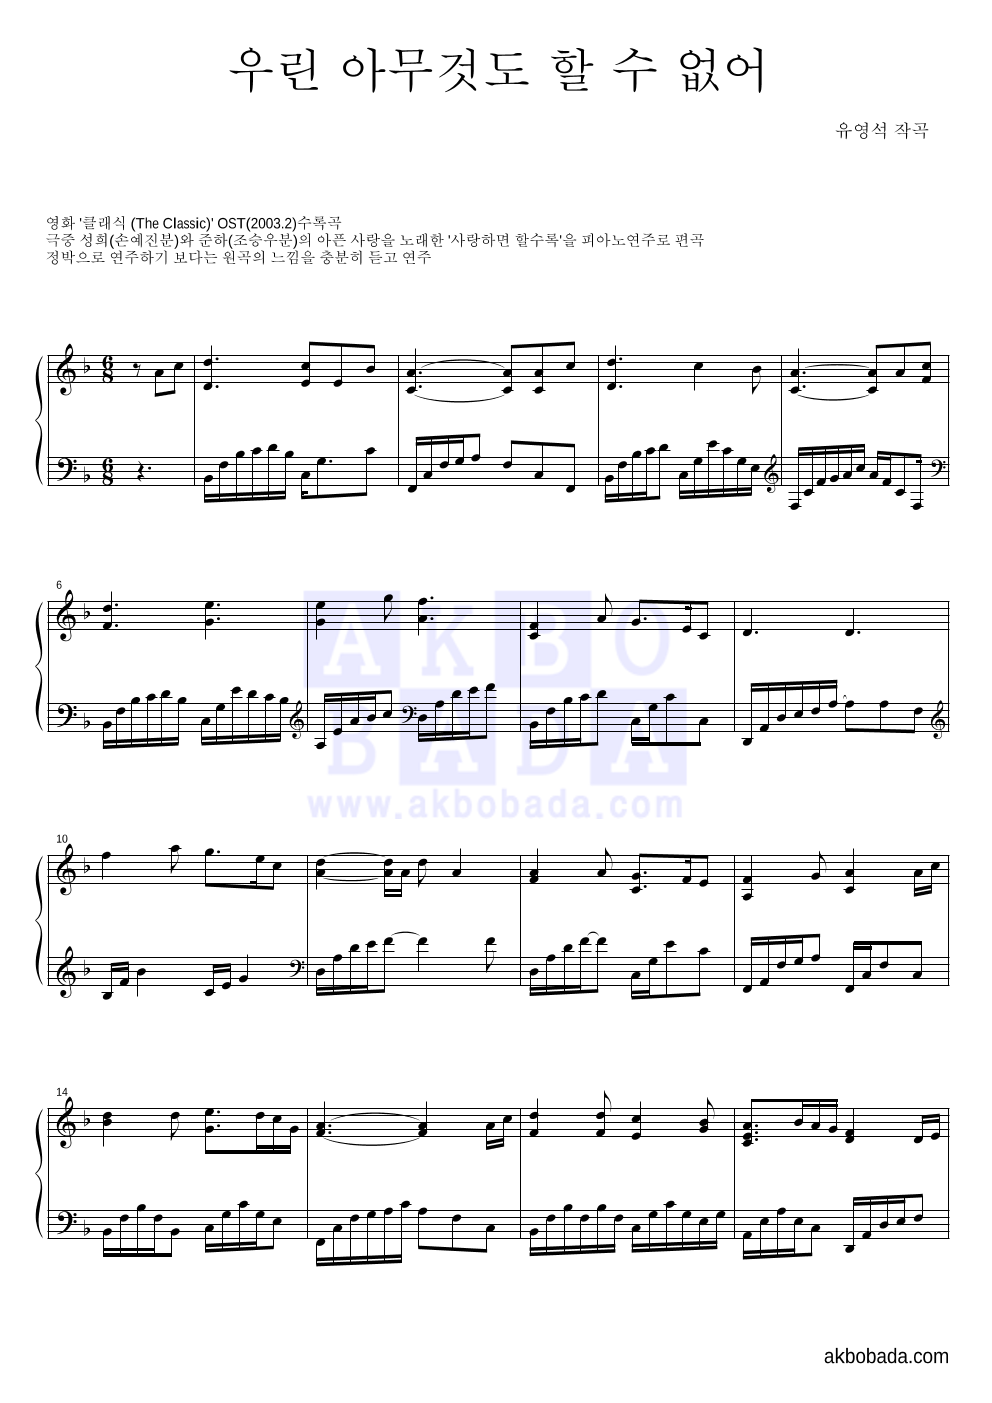 영화 클래식 OST - 우린 아무것도 할 수 없어 피아노 2단 악보 